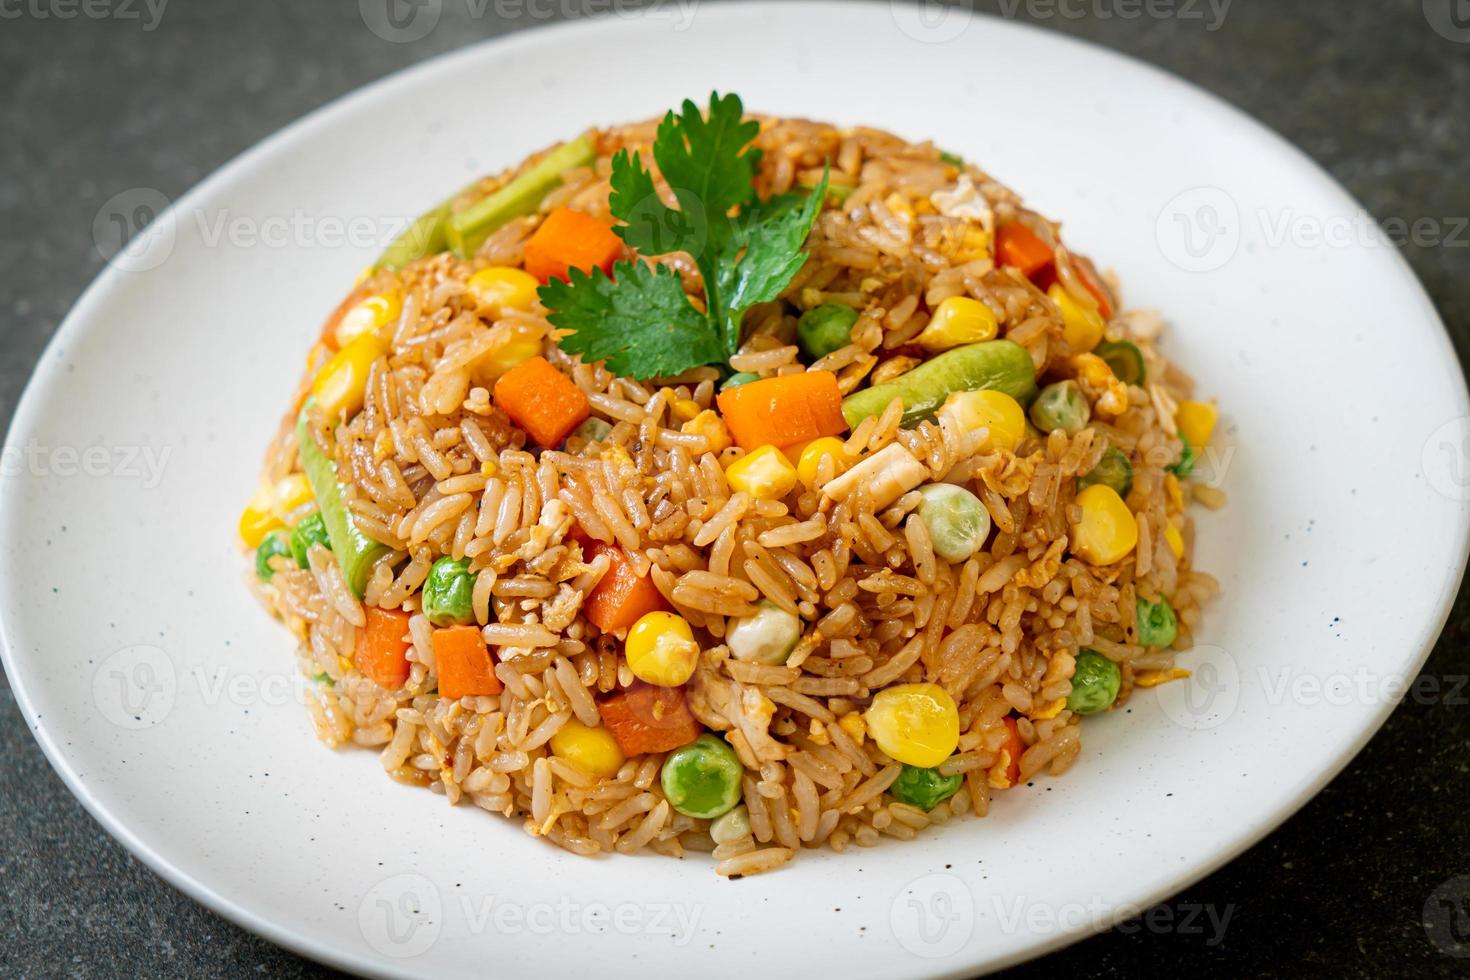 riz frit aux pois verts, carottes et maïs - style végétarien et sain photo